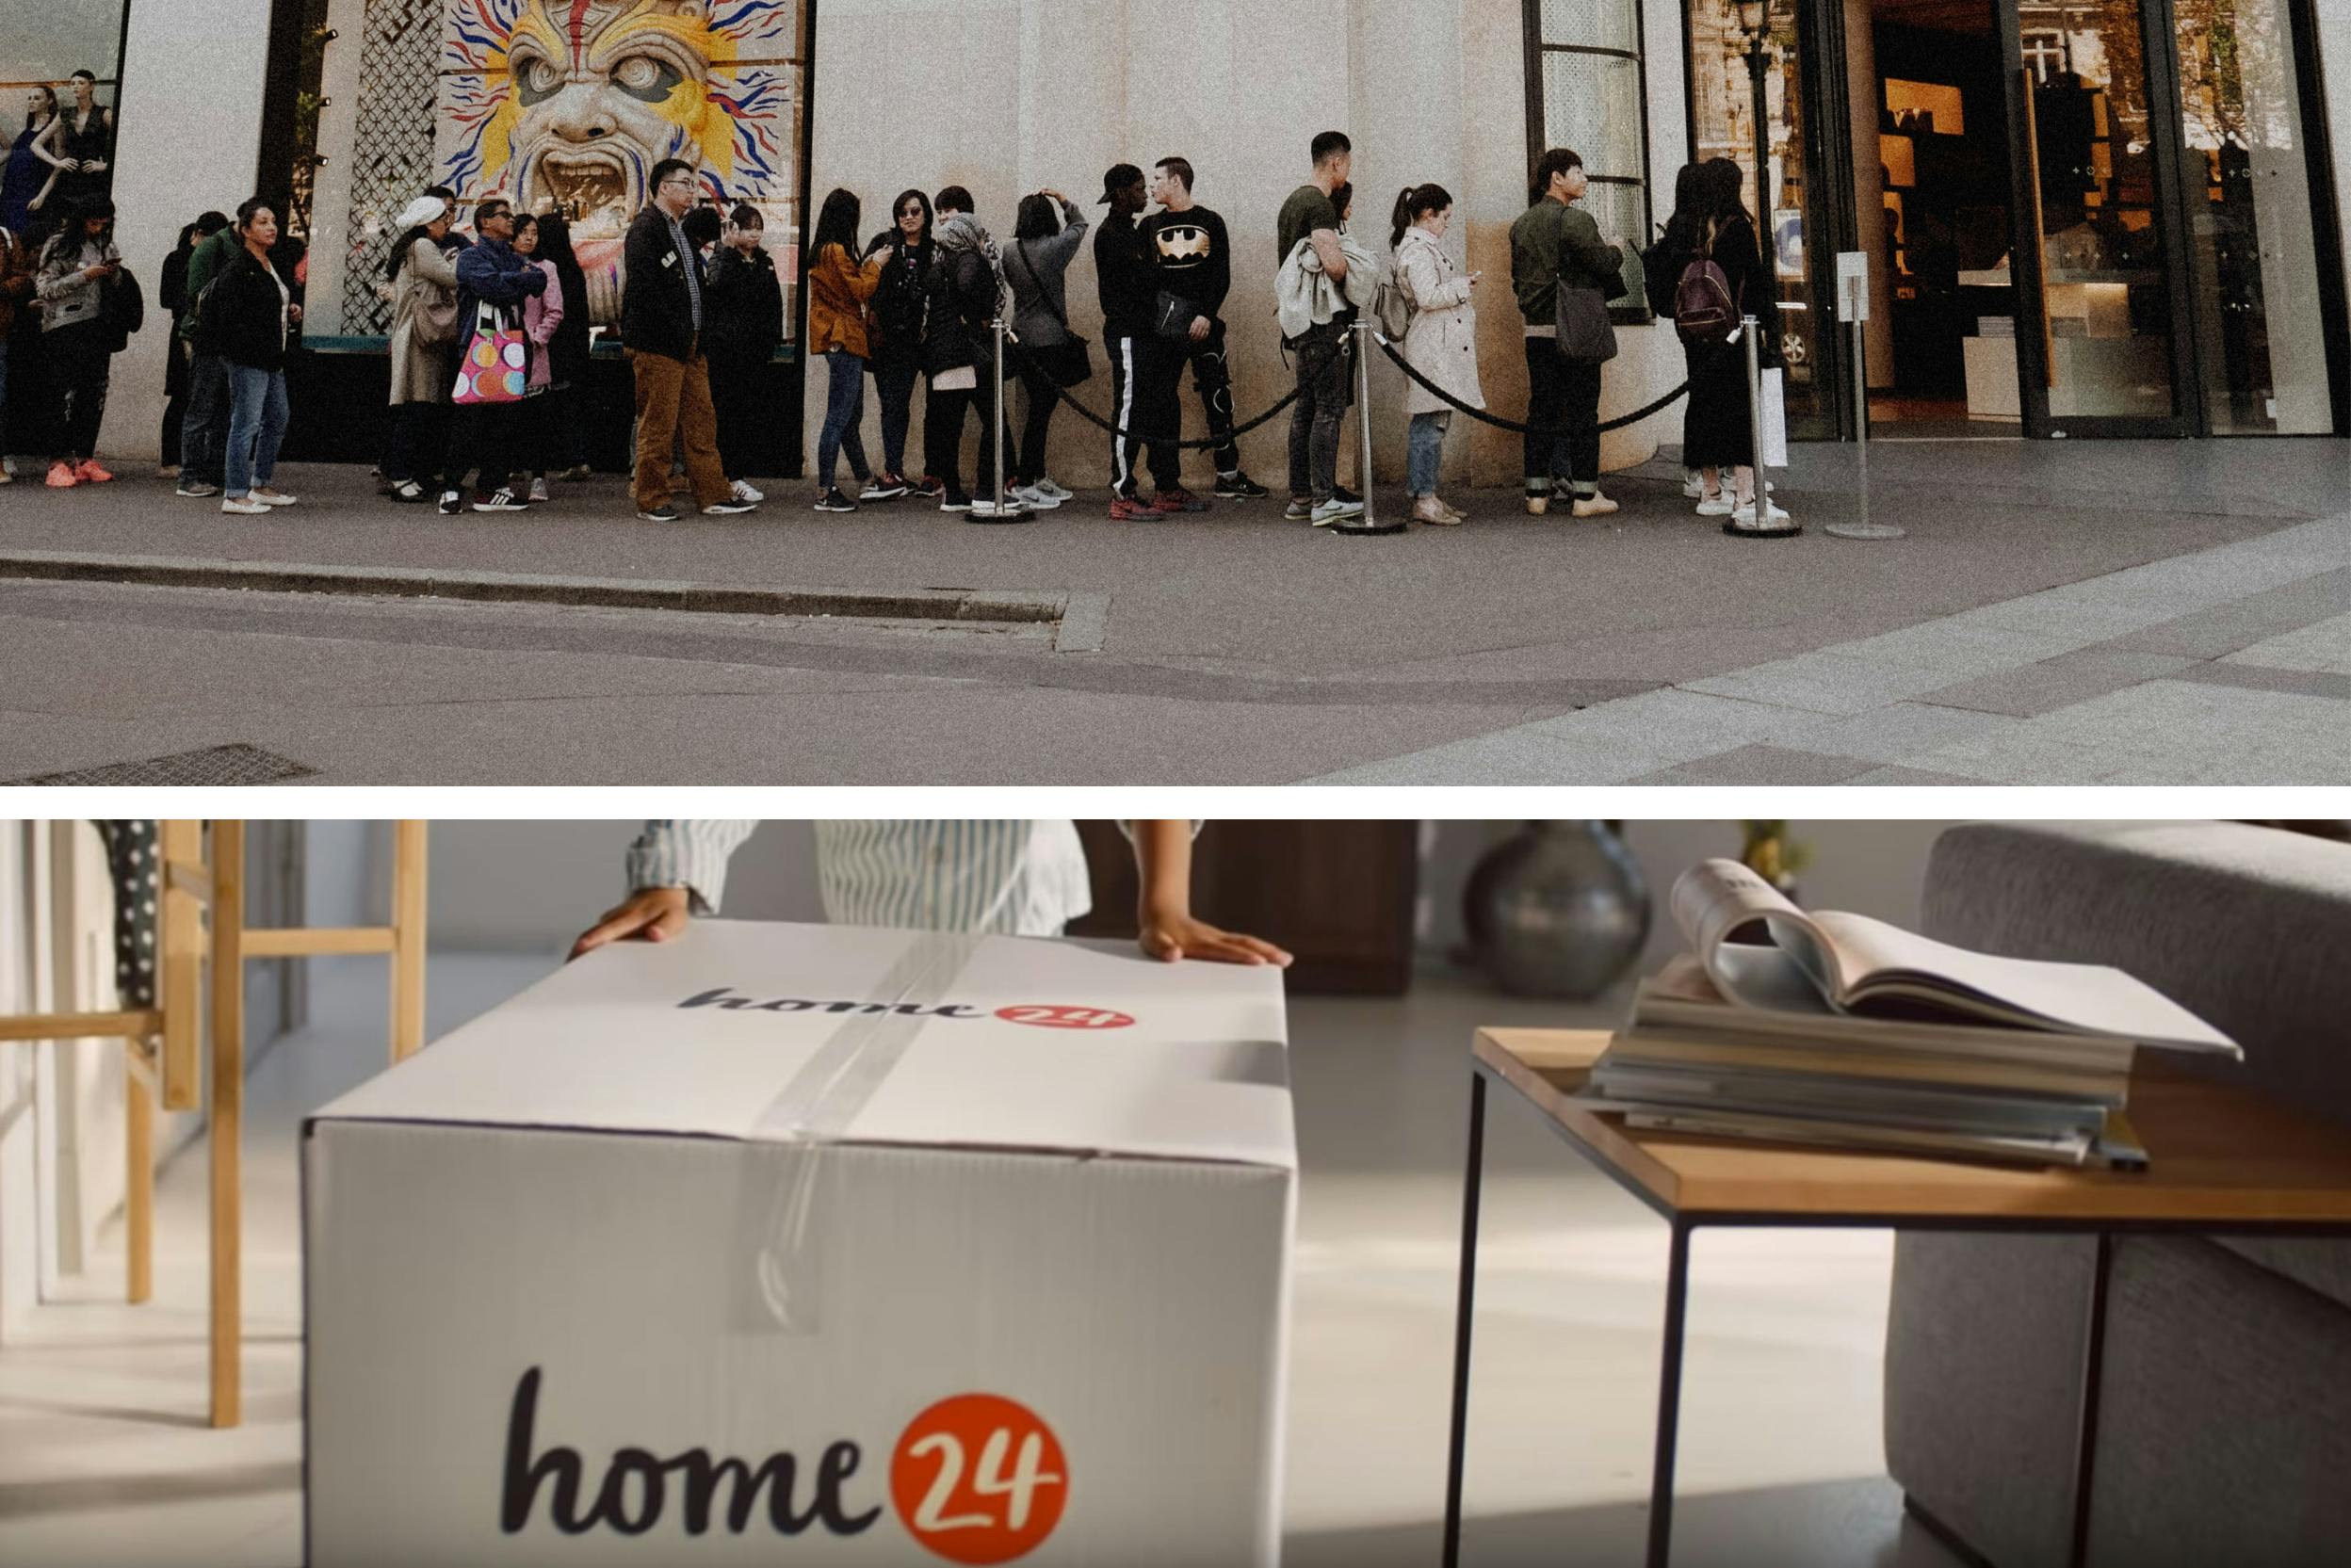 Warteschlange vor Geschäft und Anlieferung eines Pakets von home24